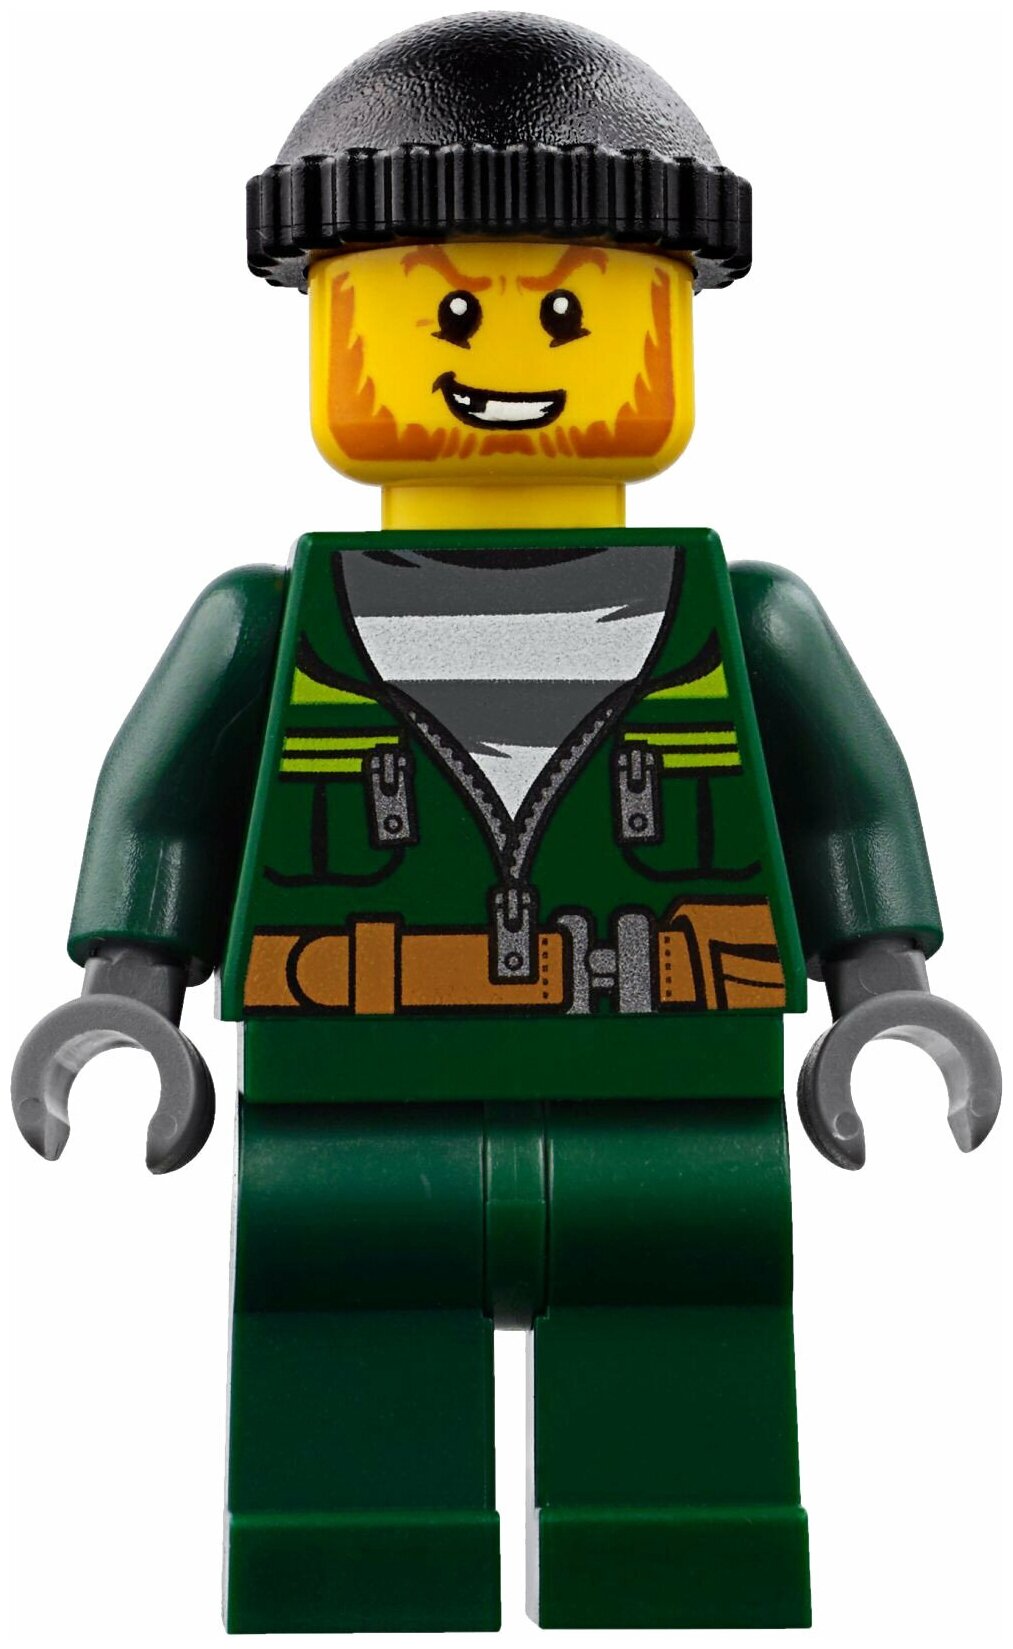 LEGO City Ограбление на бульдозере - фото №14